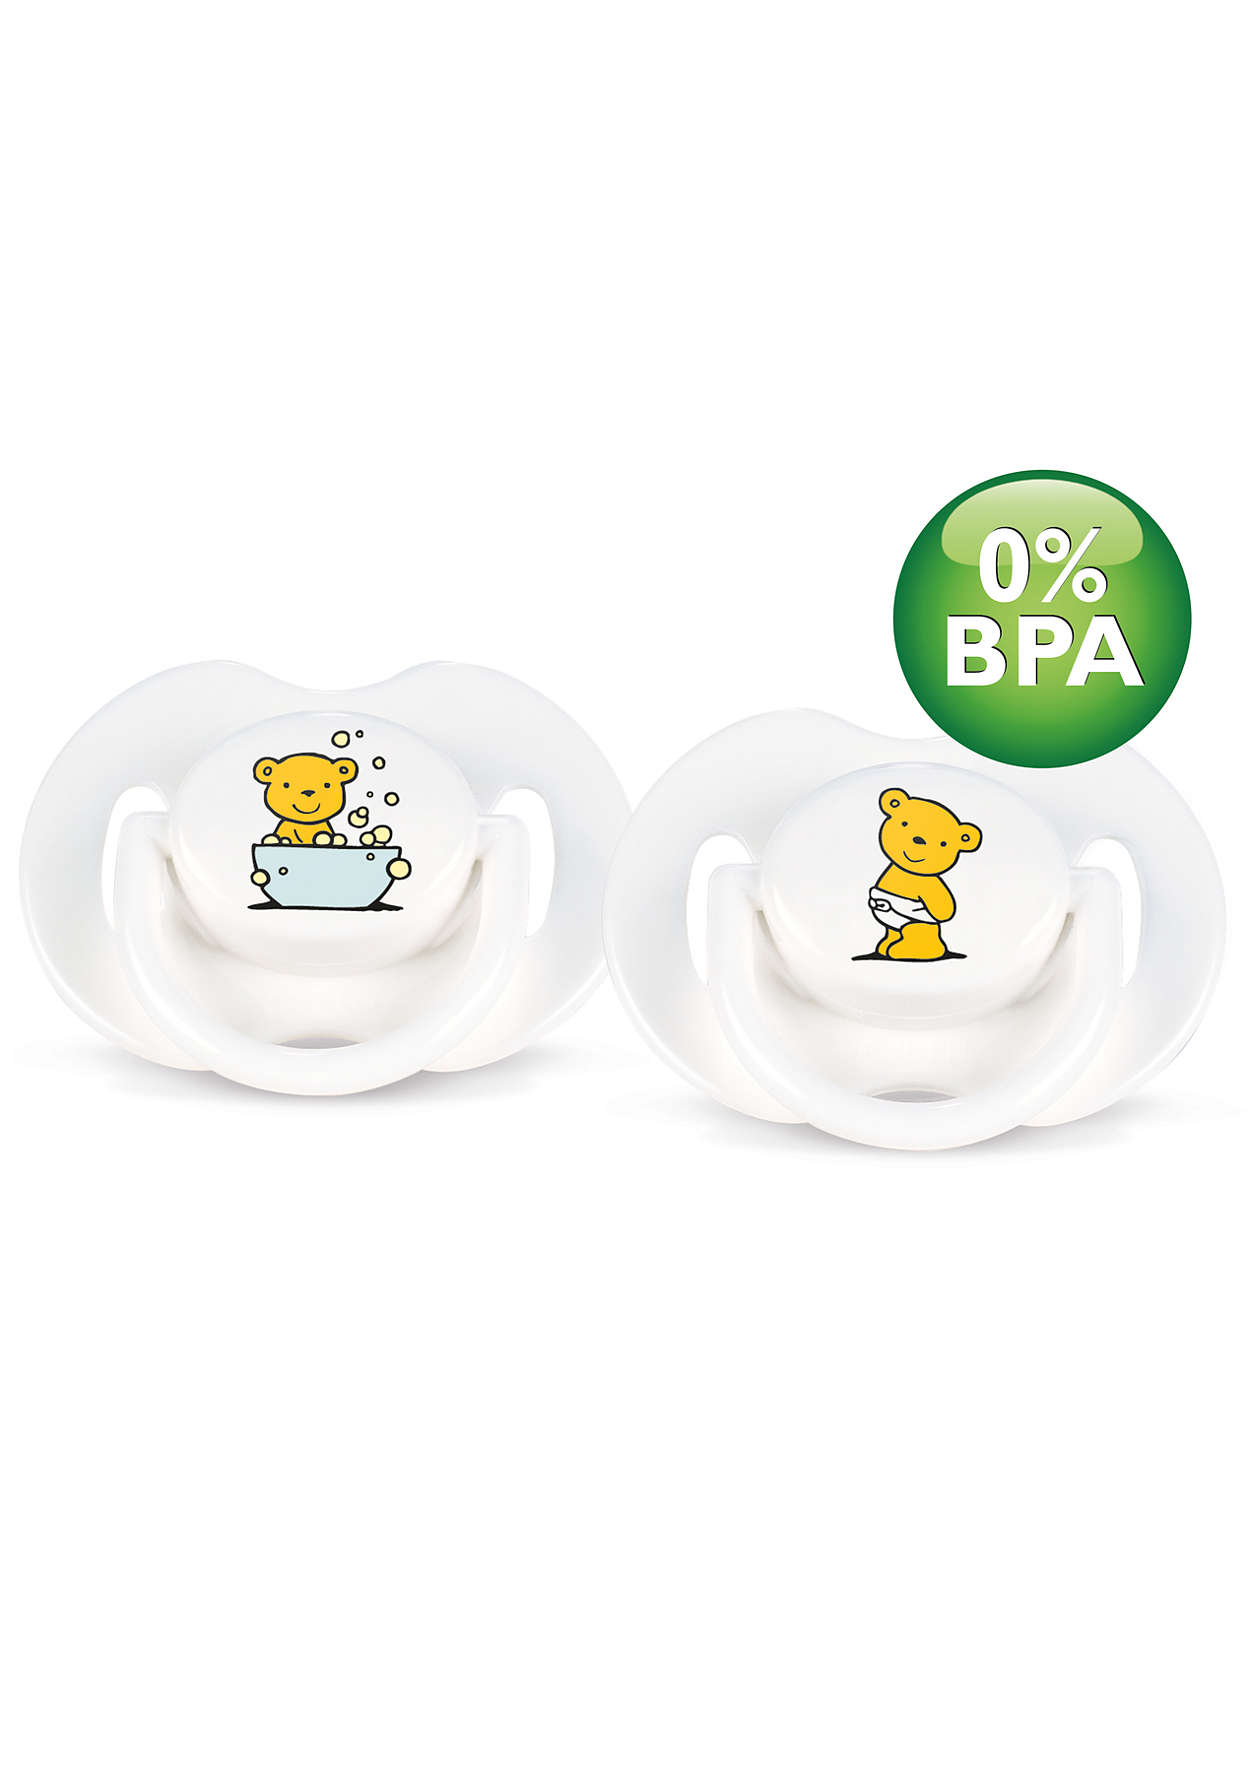 خالية من BPA وملاءمة لفم الطفل